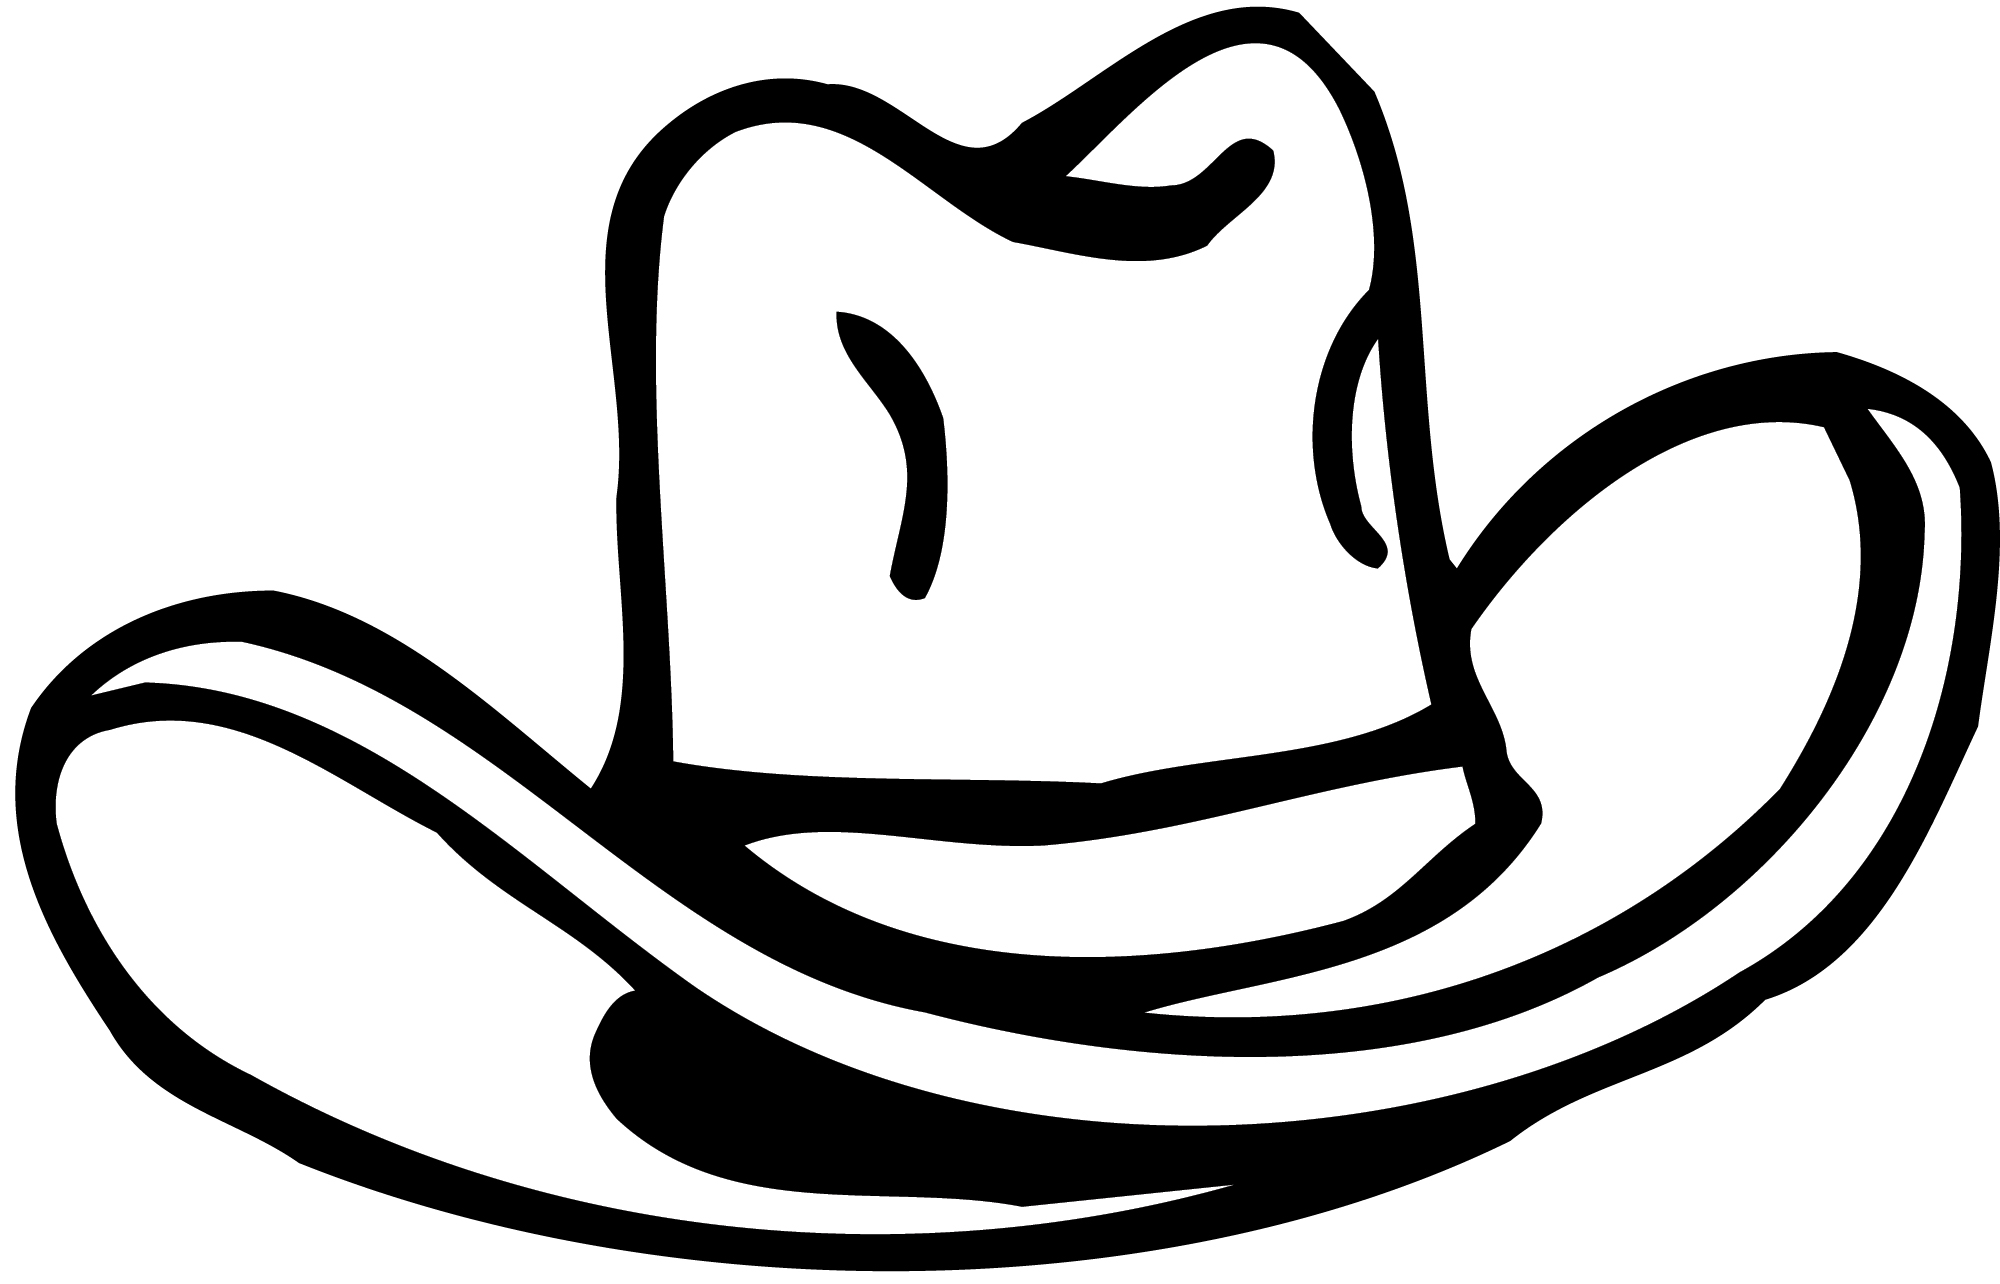 Cowboy Hat 7 Http Www How To Draw Funny Cartoons Com Cartoon Cowboy